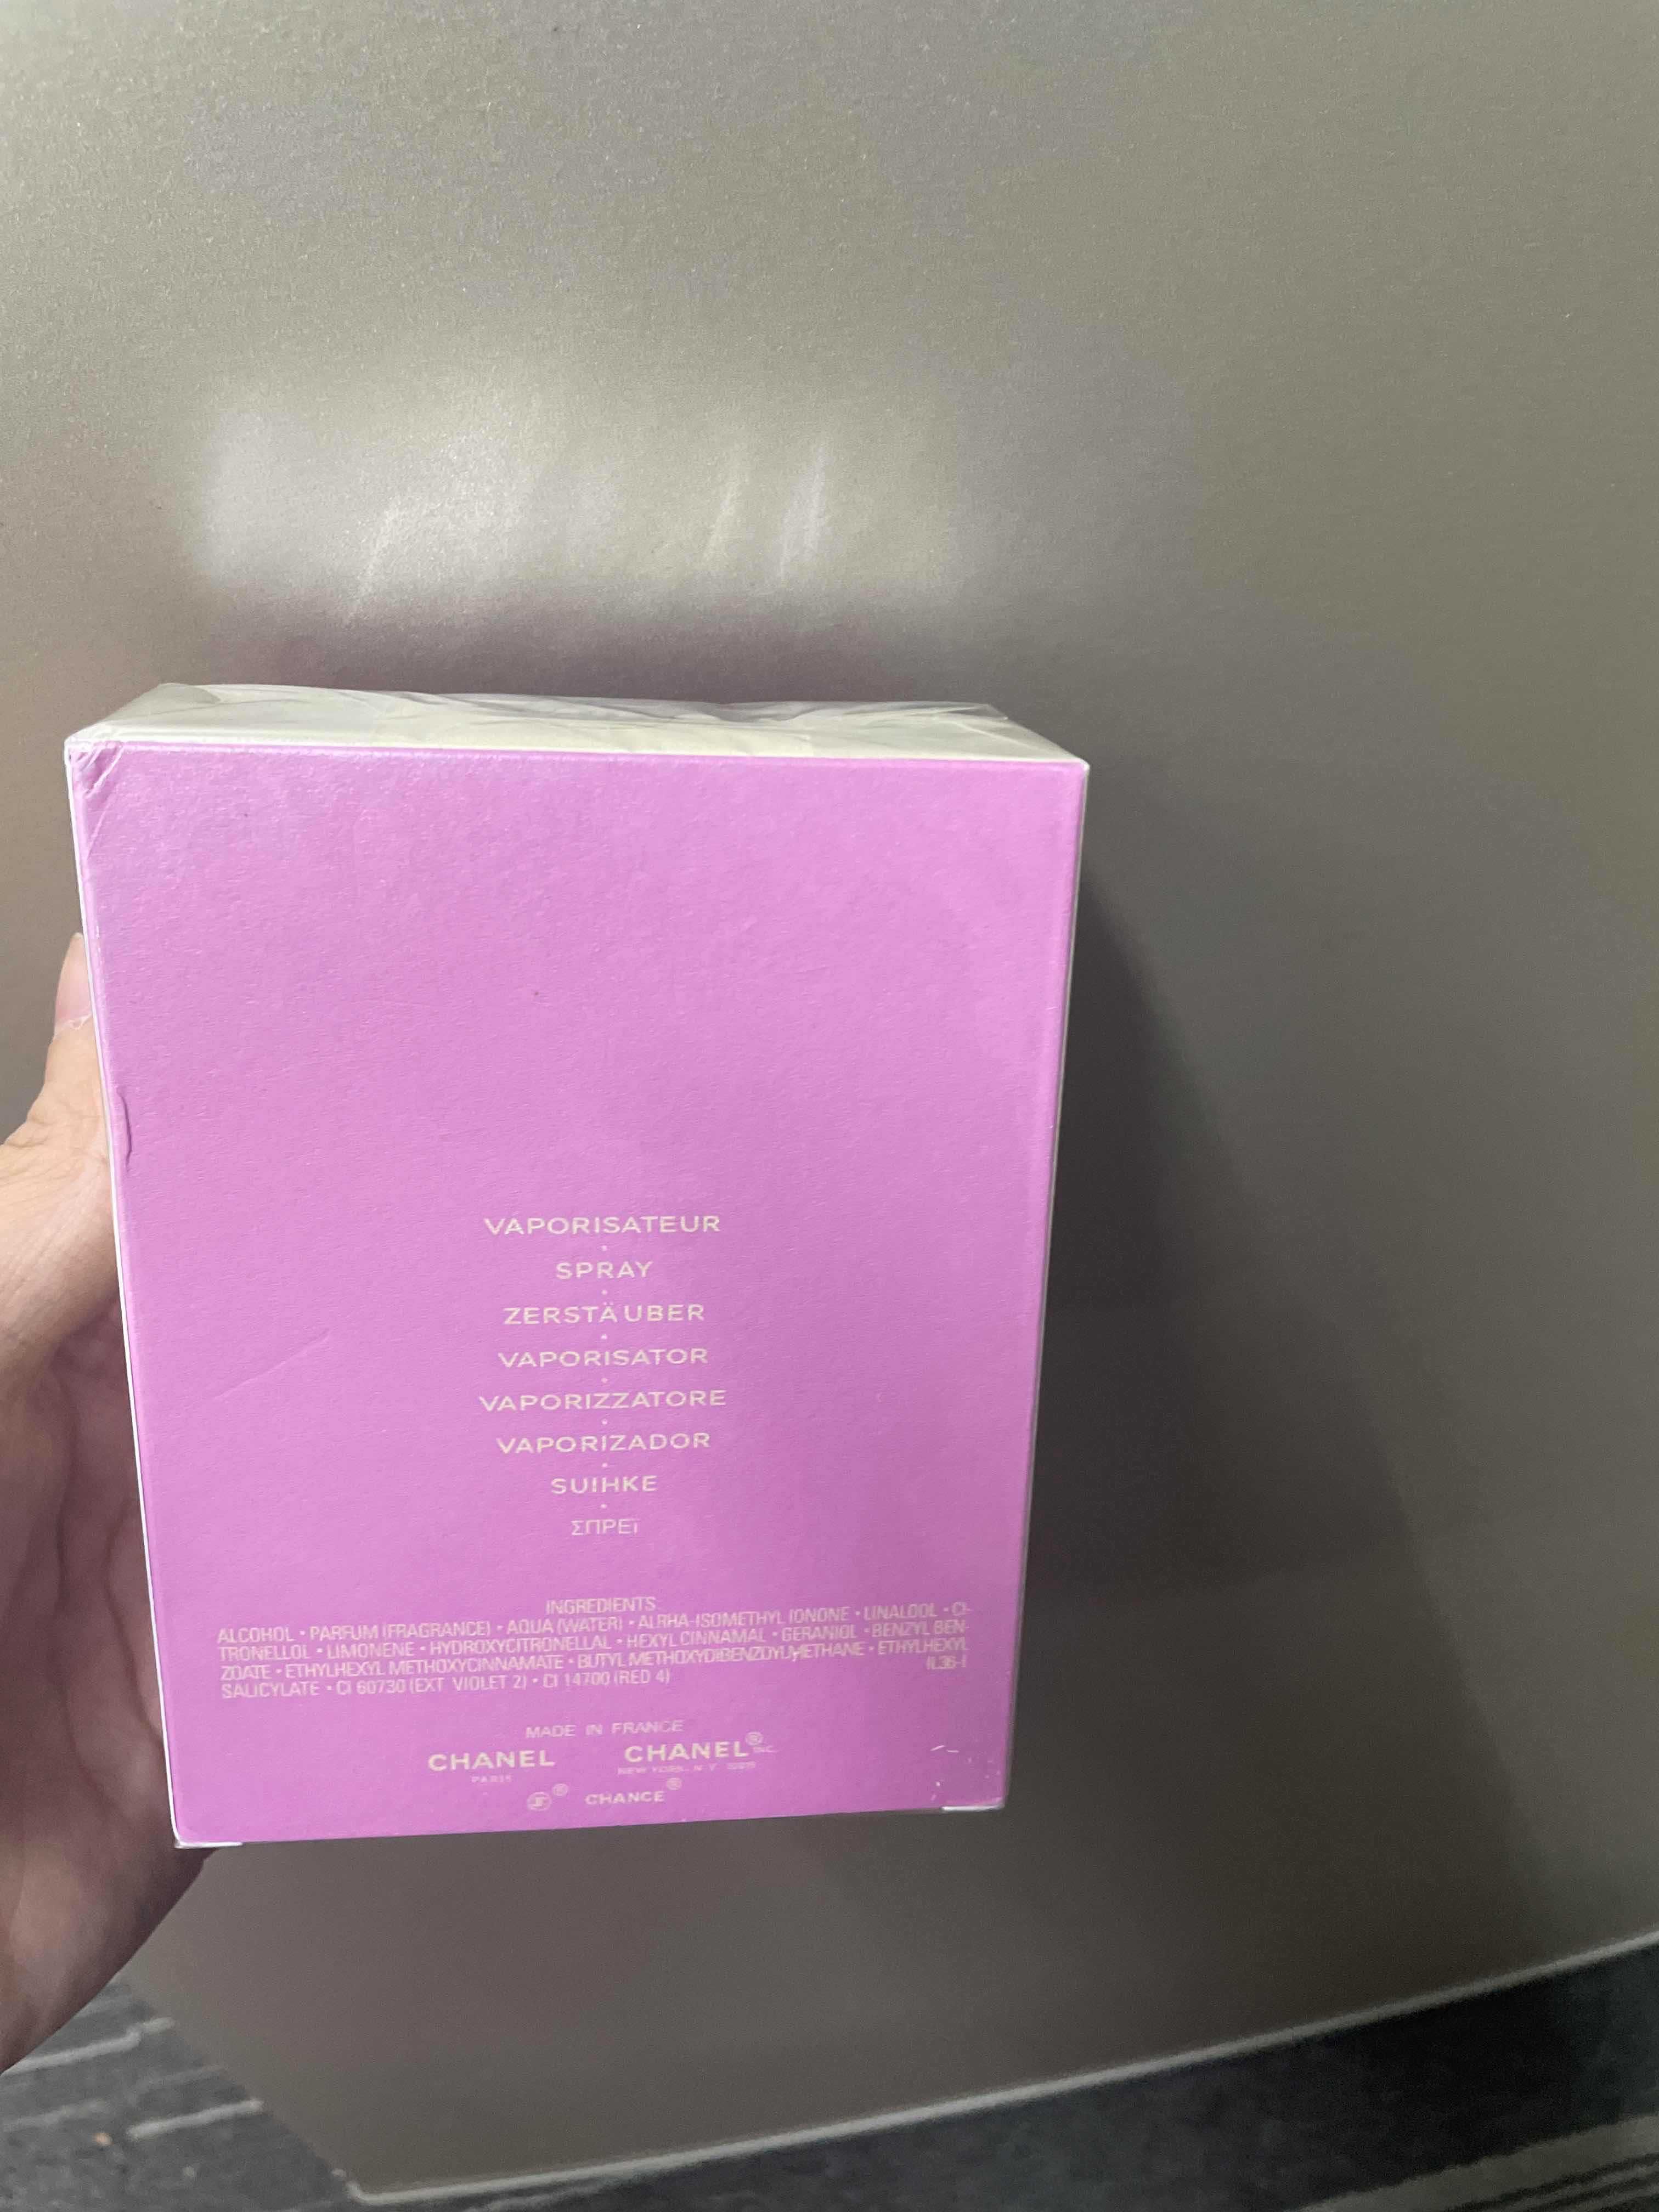 Oryginalna  perfumy Chanel w kolorze różowym,delikatna,nowa,nieotwarta